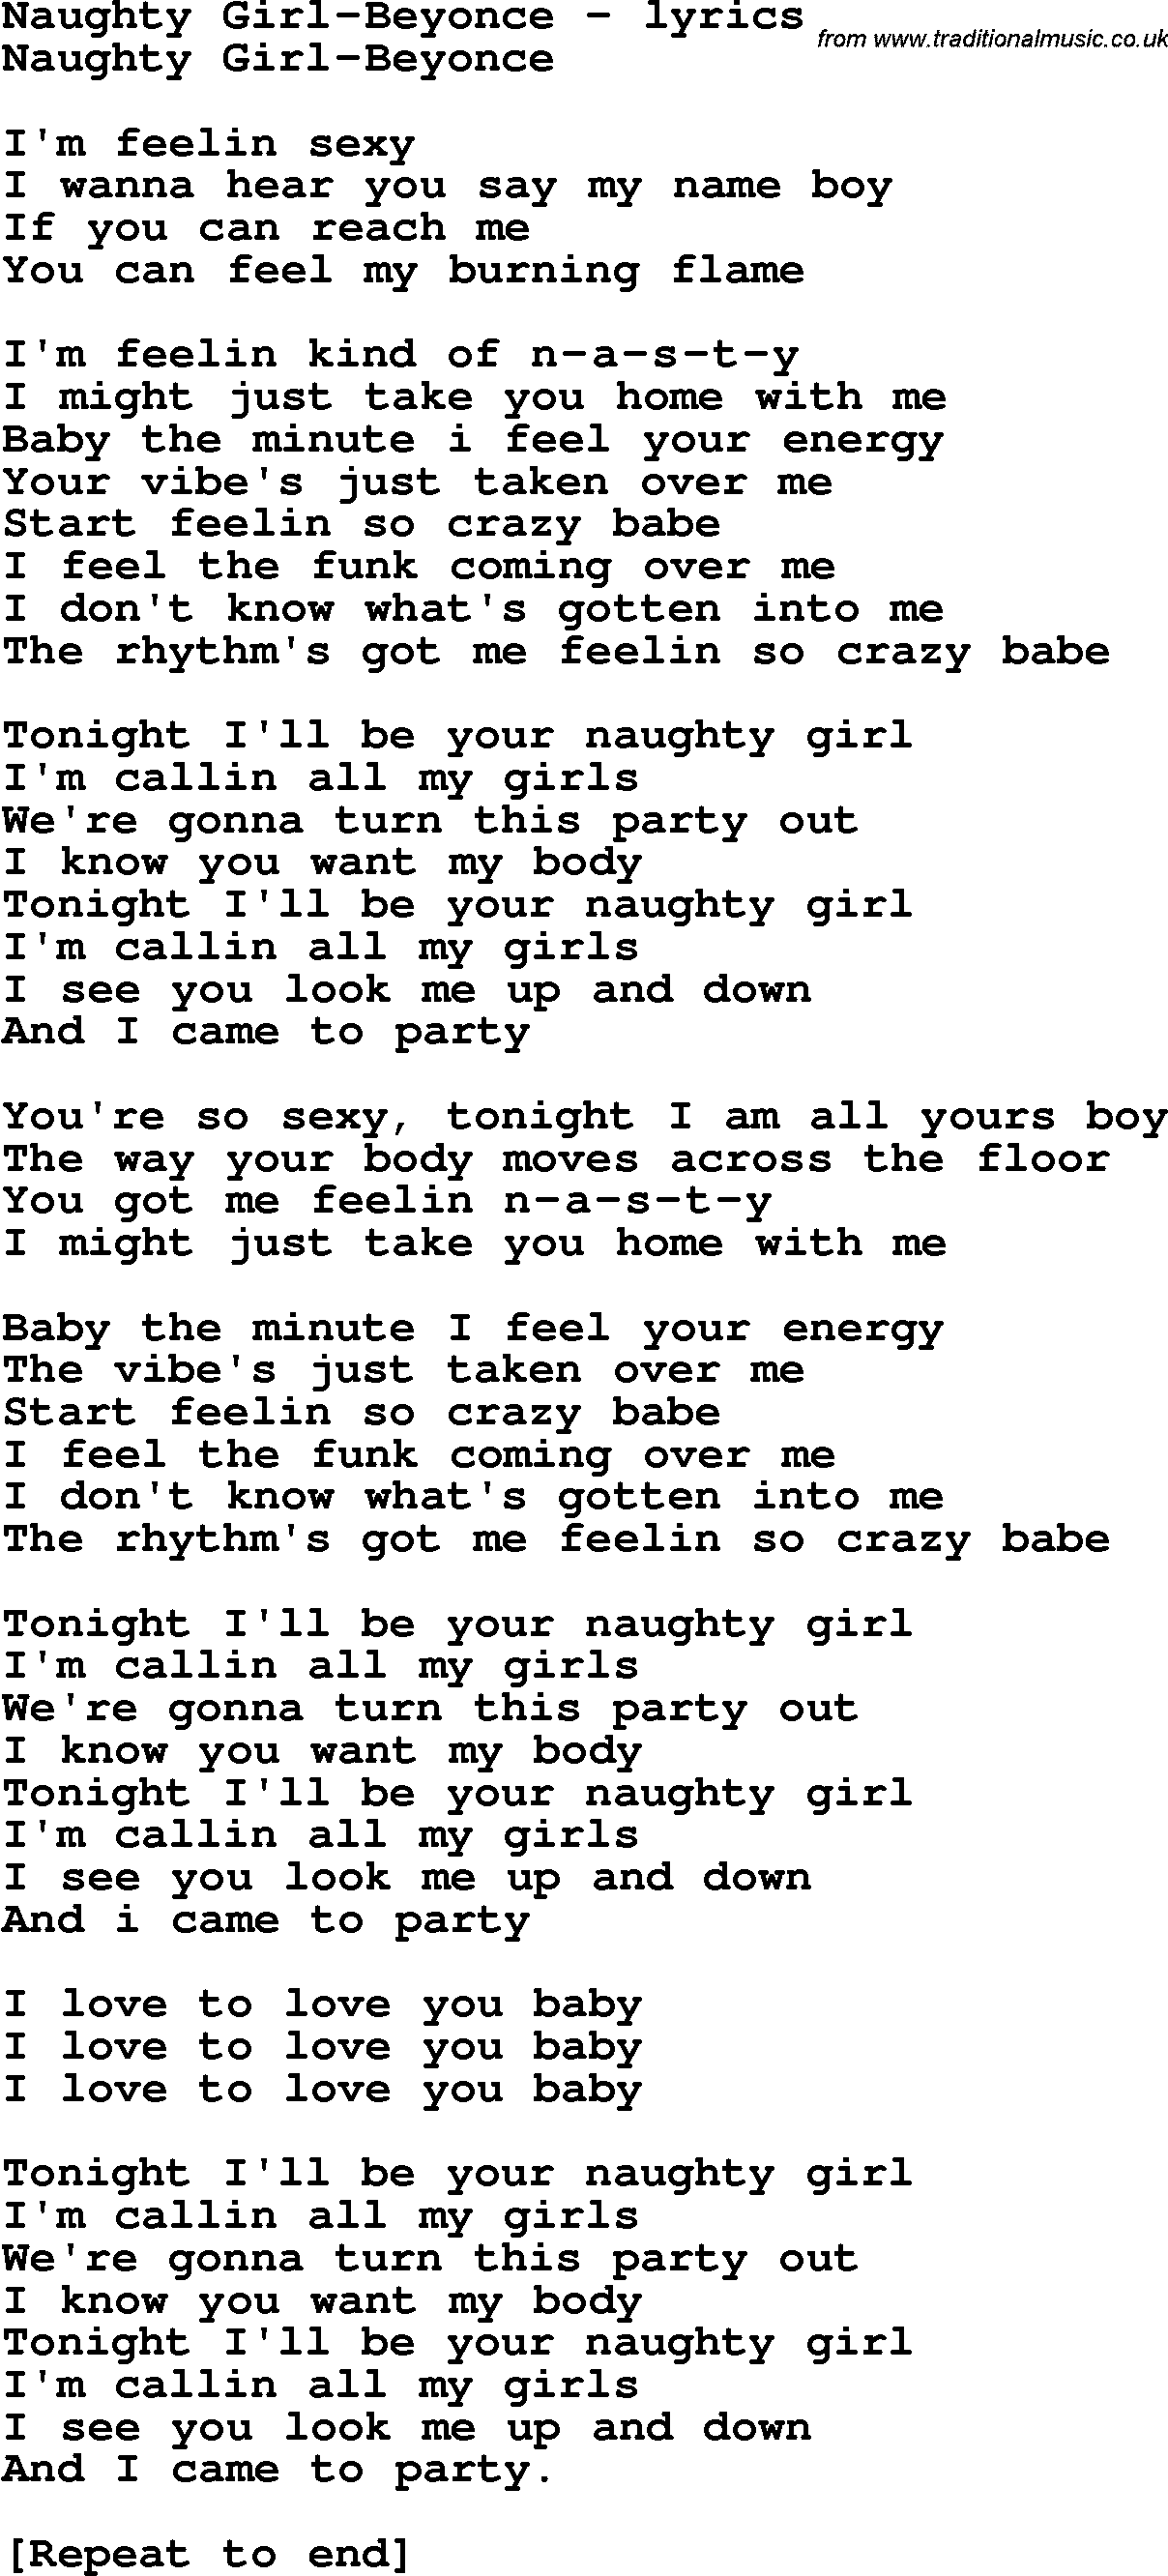 Love Song Lyrics for: Naughty Girl-Beyonce